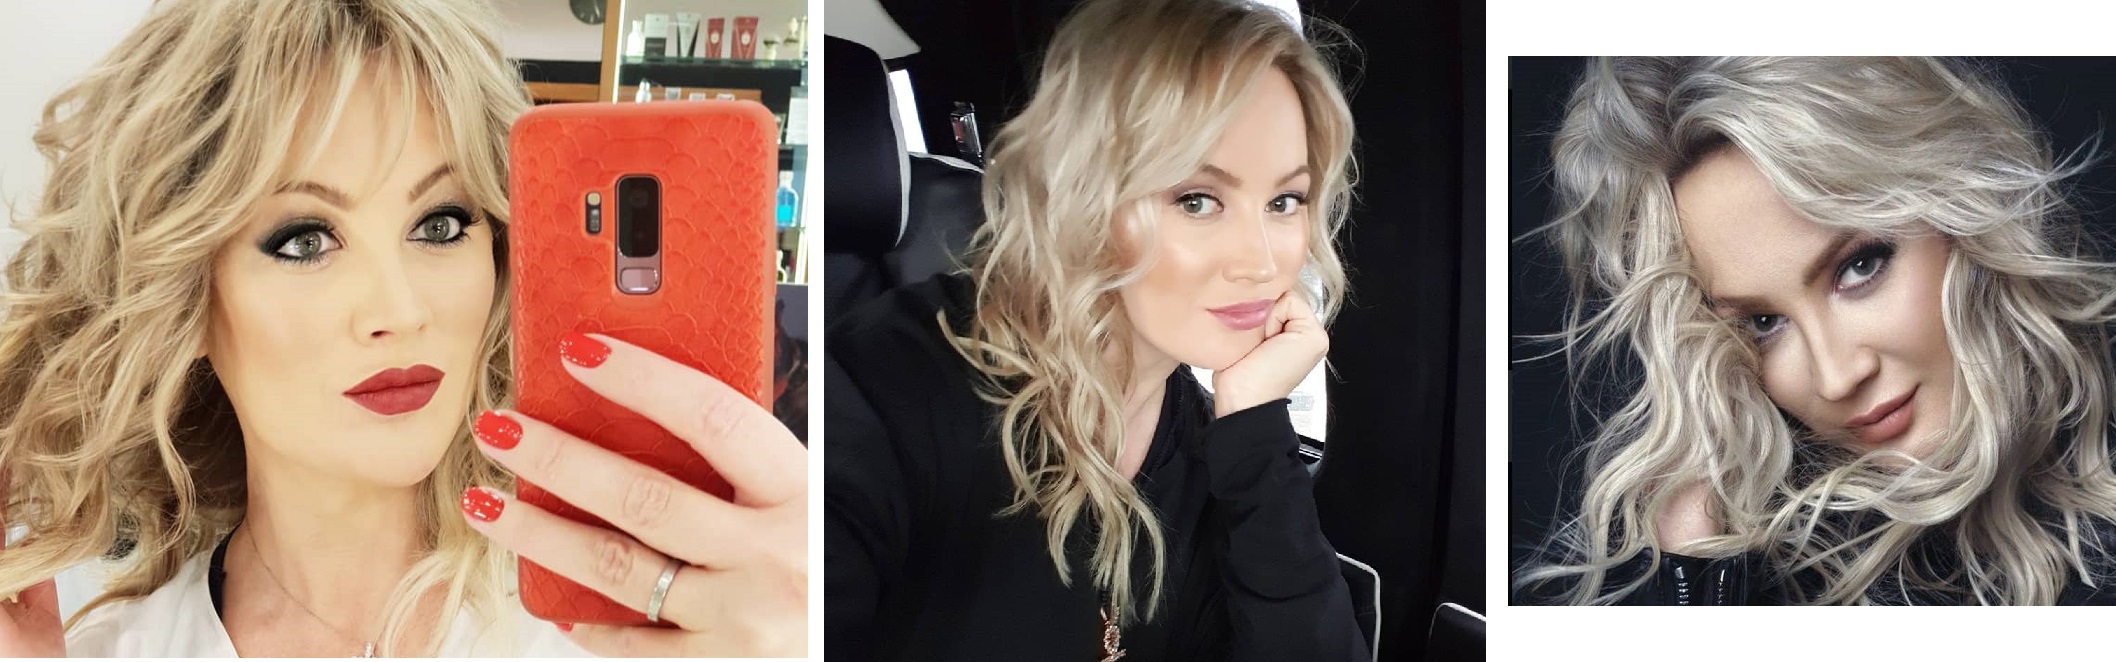 Жена стаса михайлова до и после пластики фото возраст